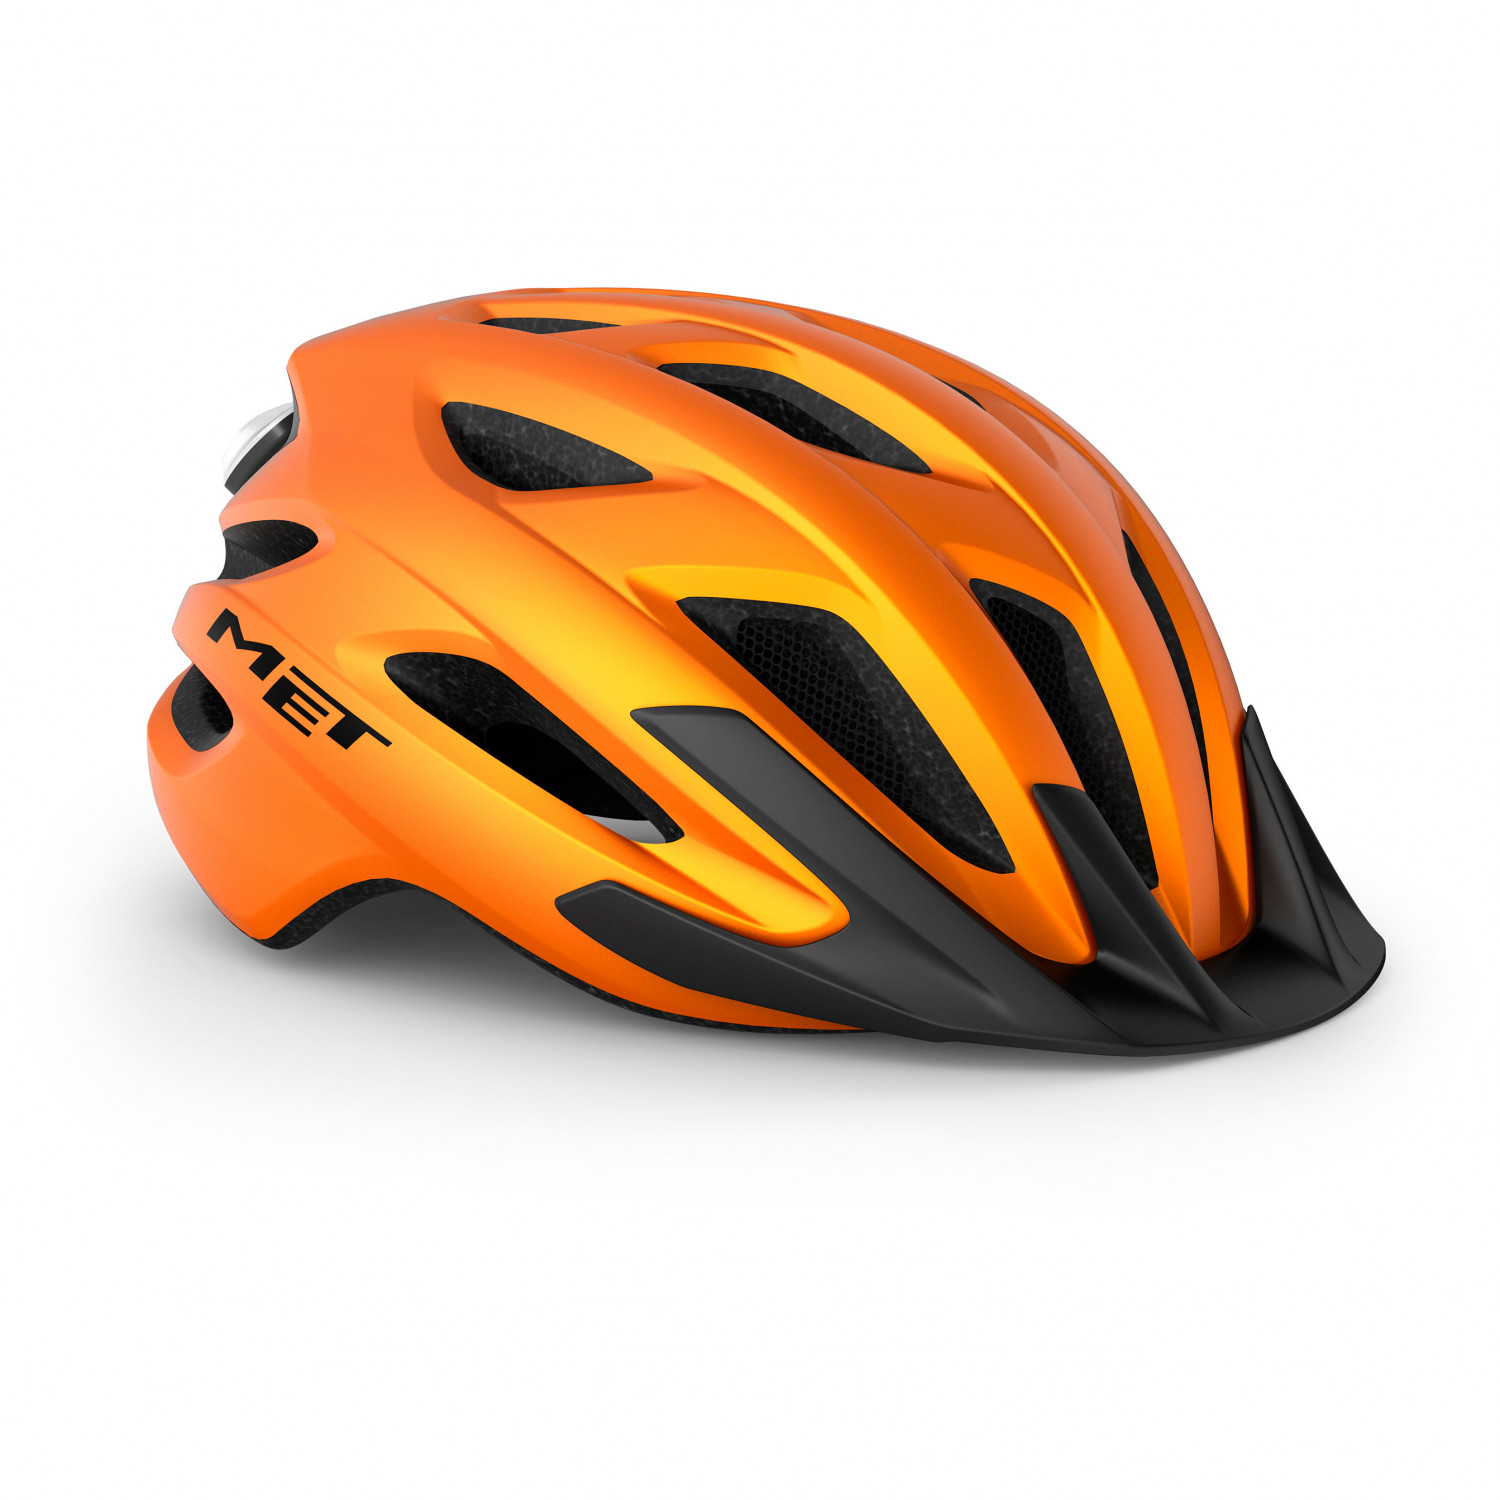 Велосипедный шлем Met Crossover, оранжевый